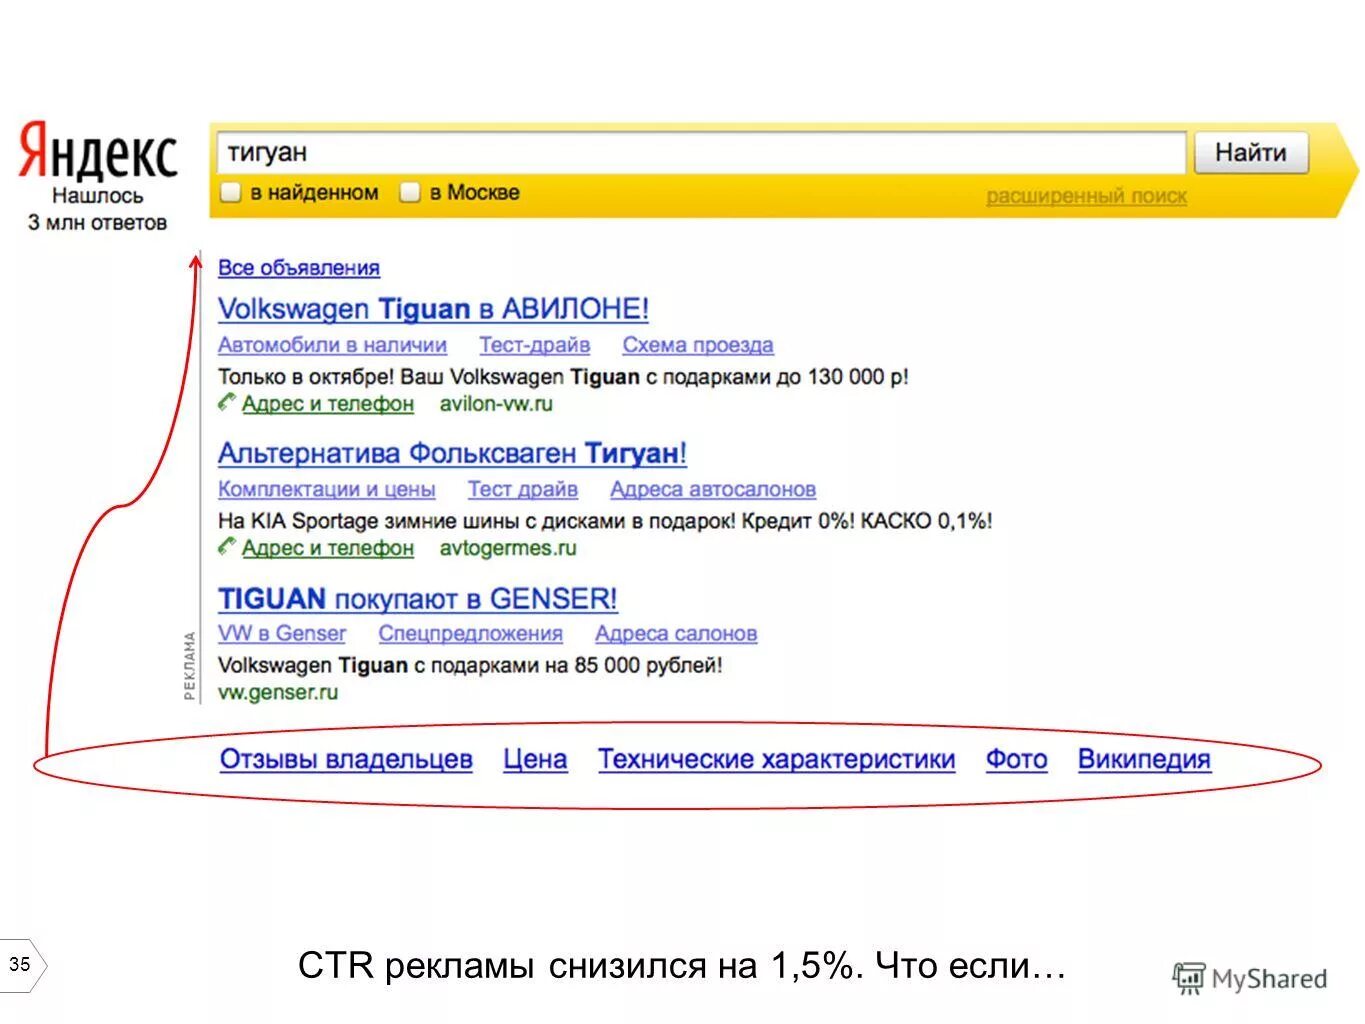 Сколько стоит технический. Ширина поиска Яндекса.